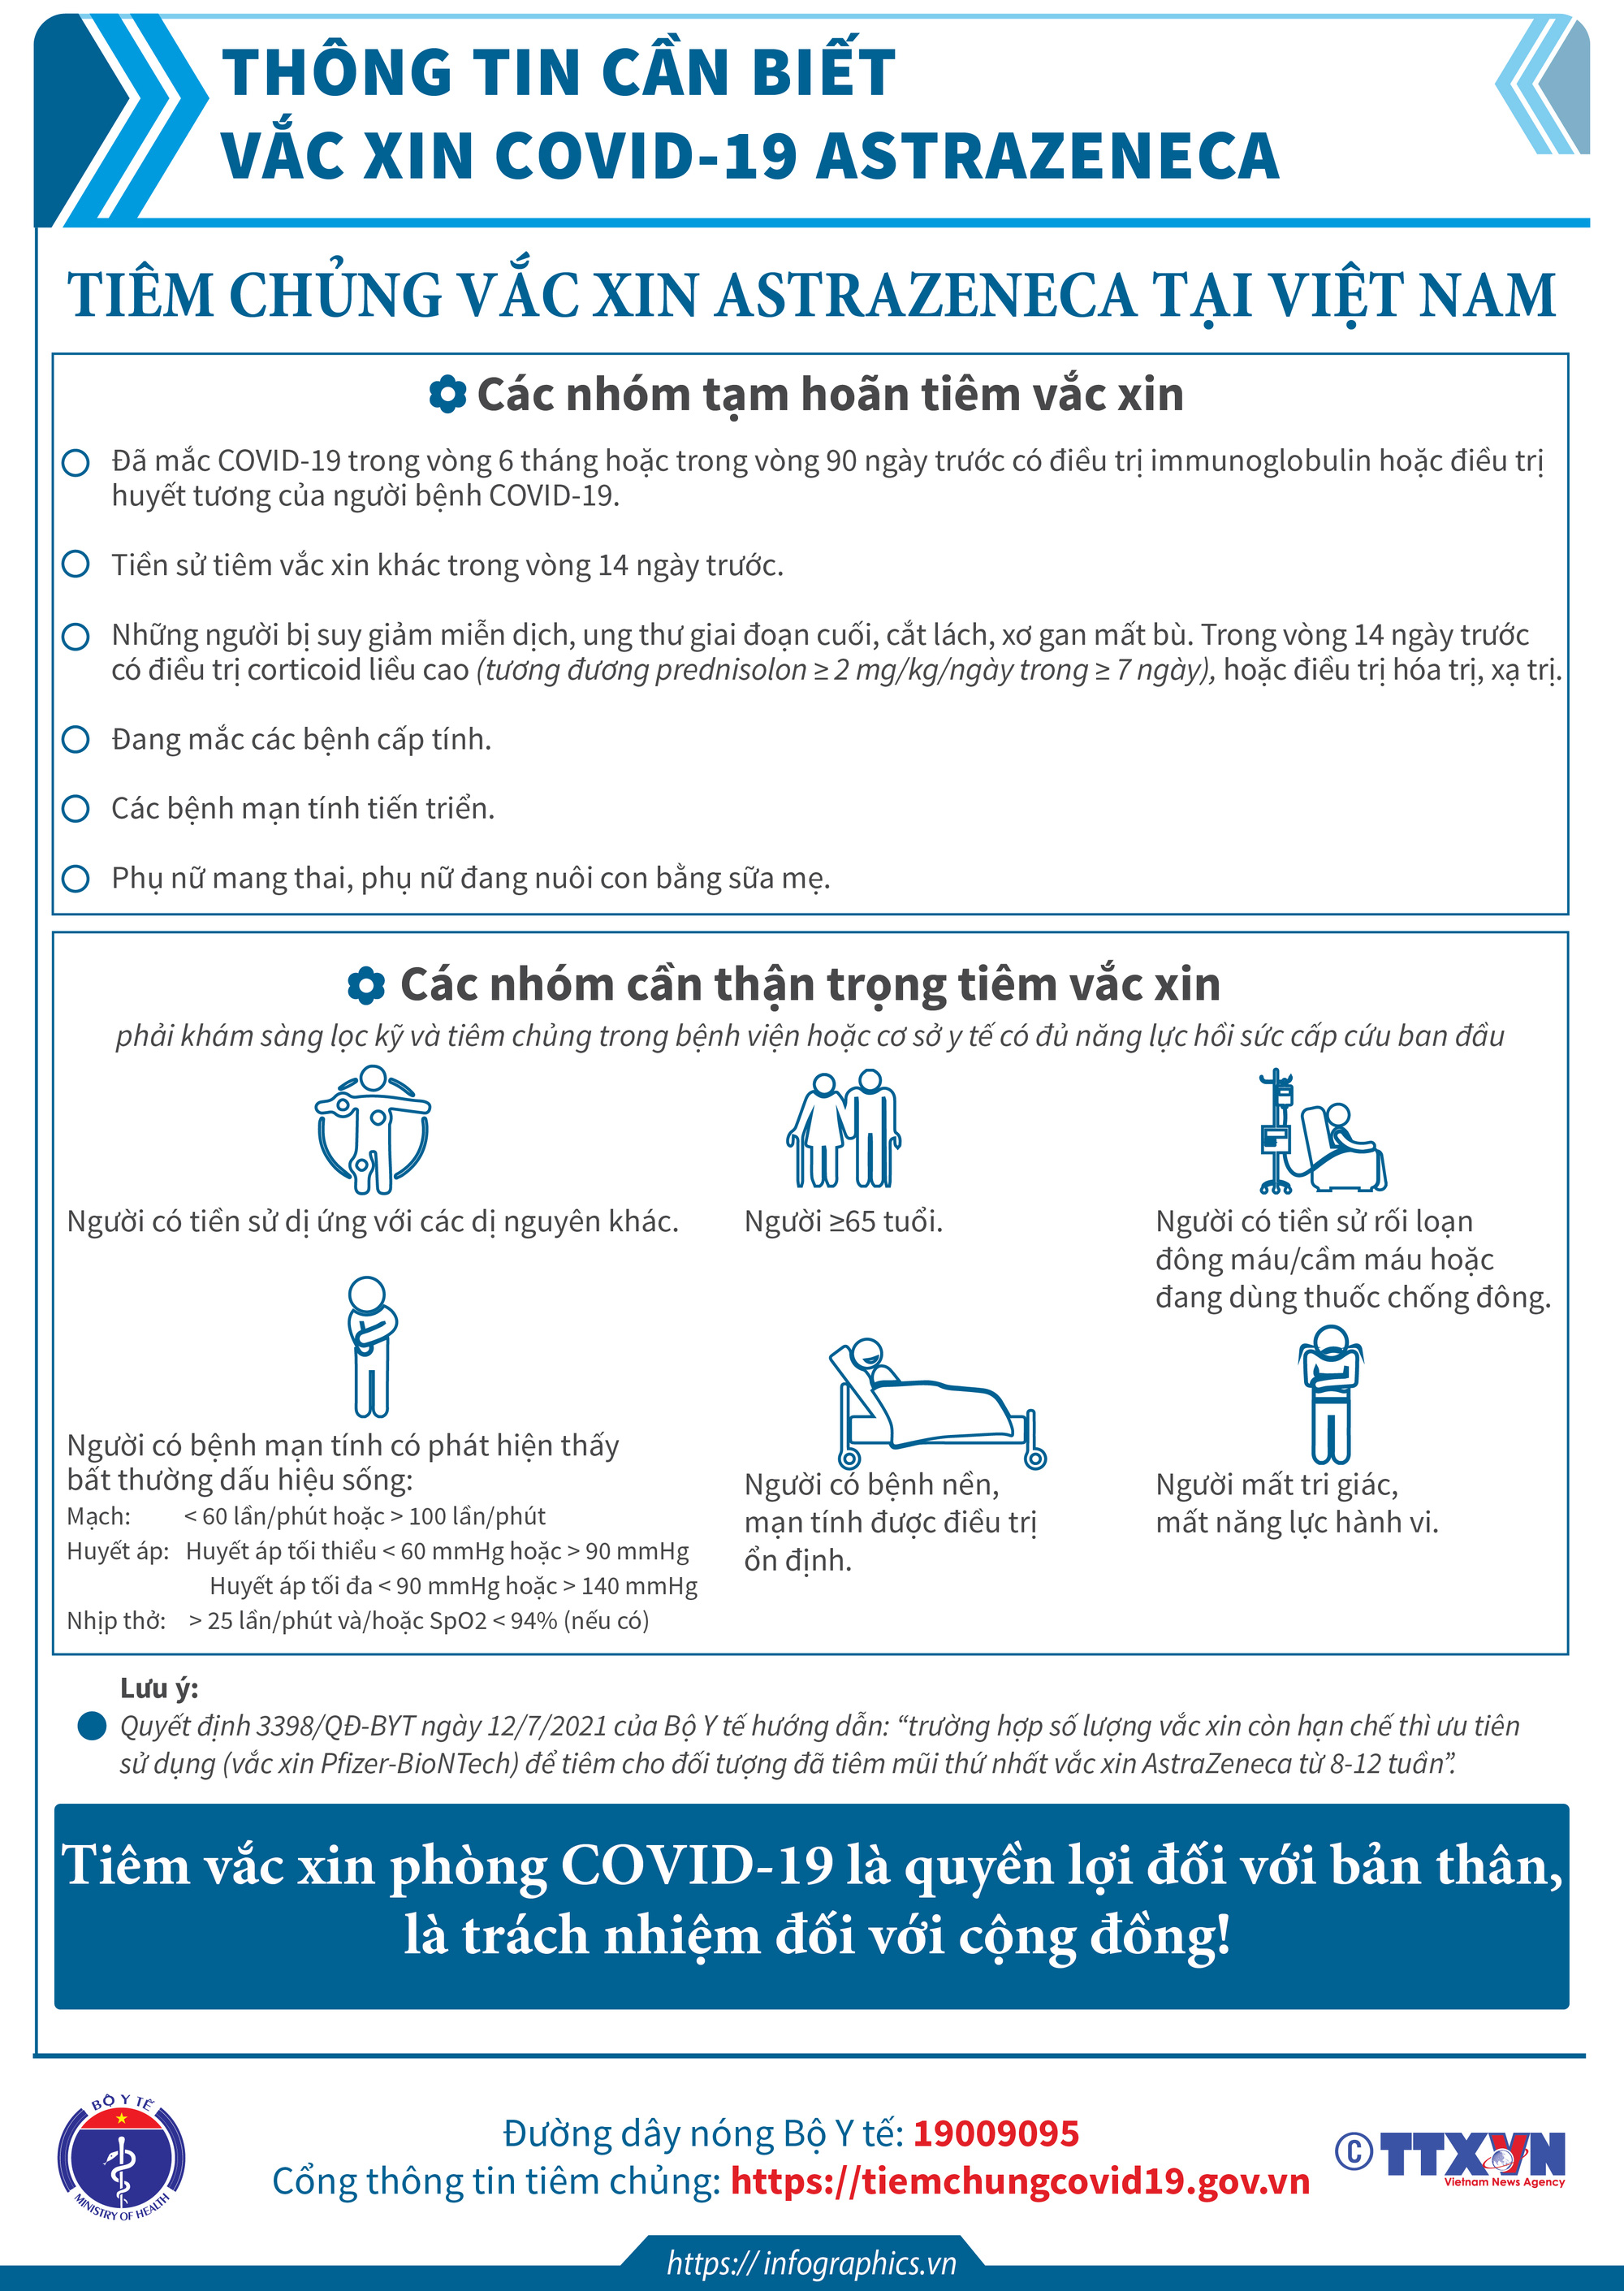 Thông tin cần biết về một số vaccine COVID-19 đang triển khai tiêm chủng tại Việt Nam. - Ảnh 4.